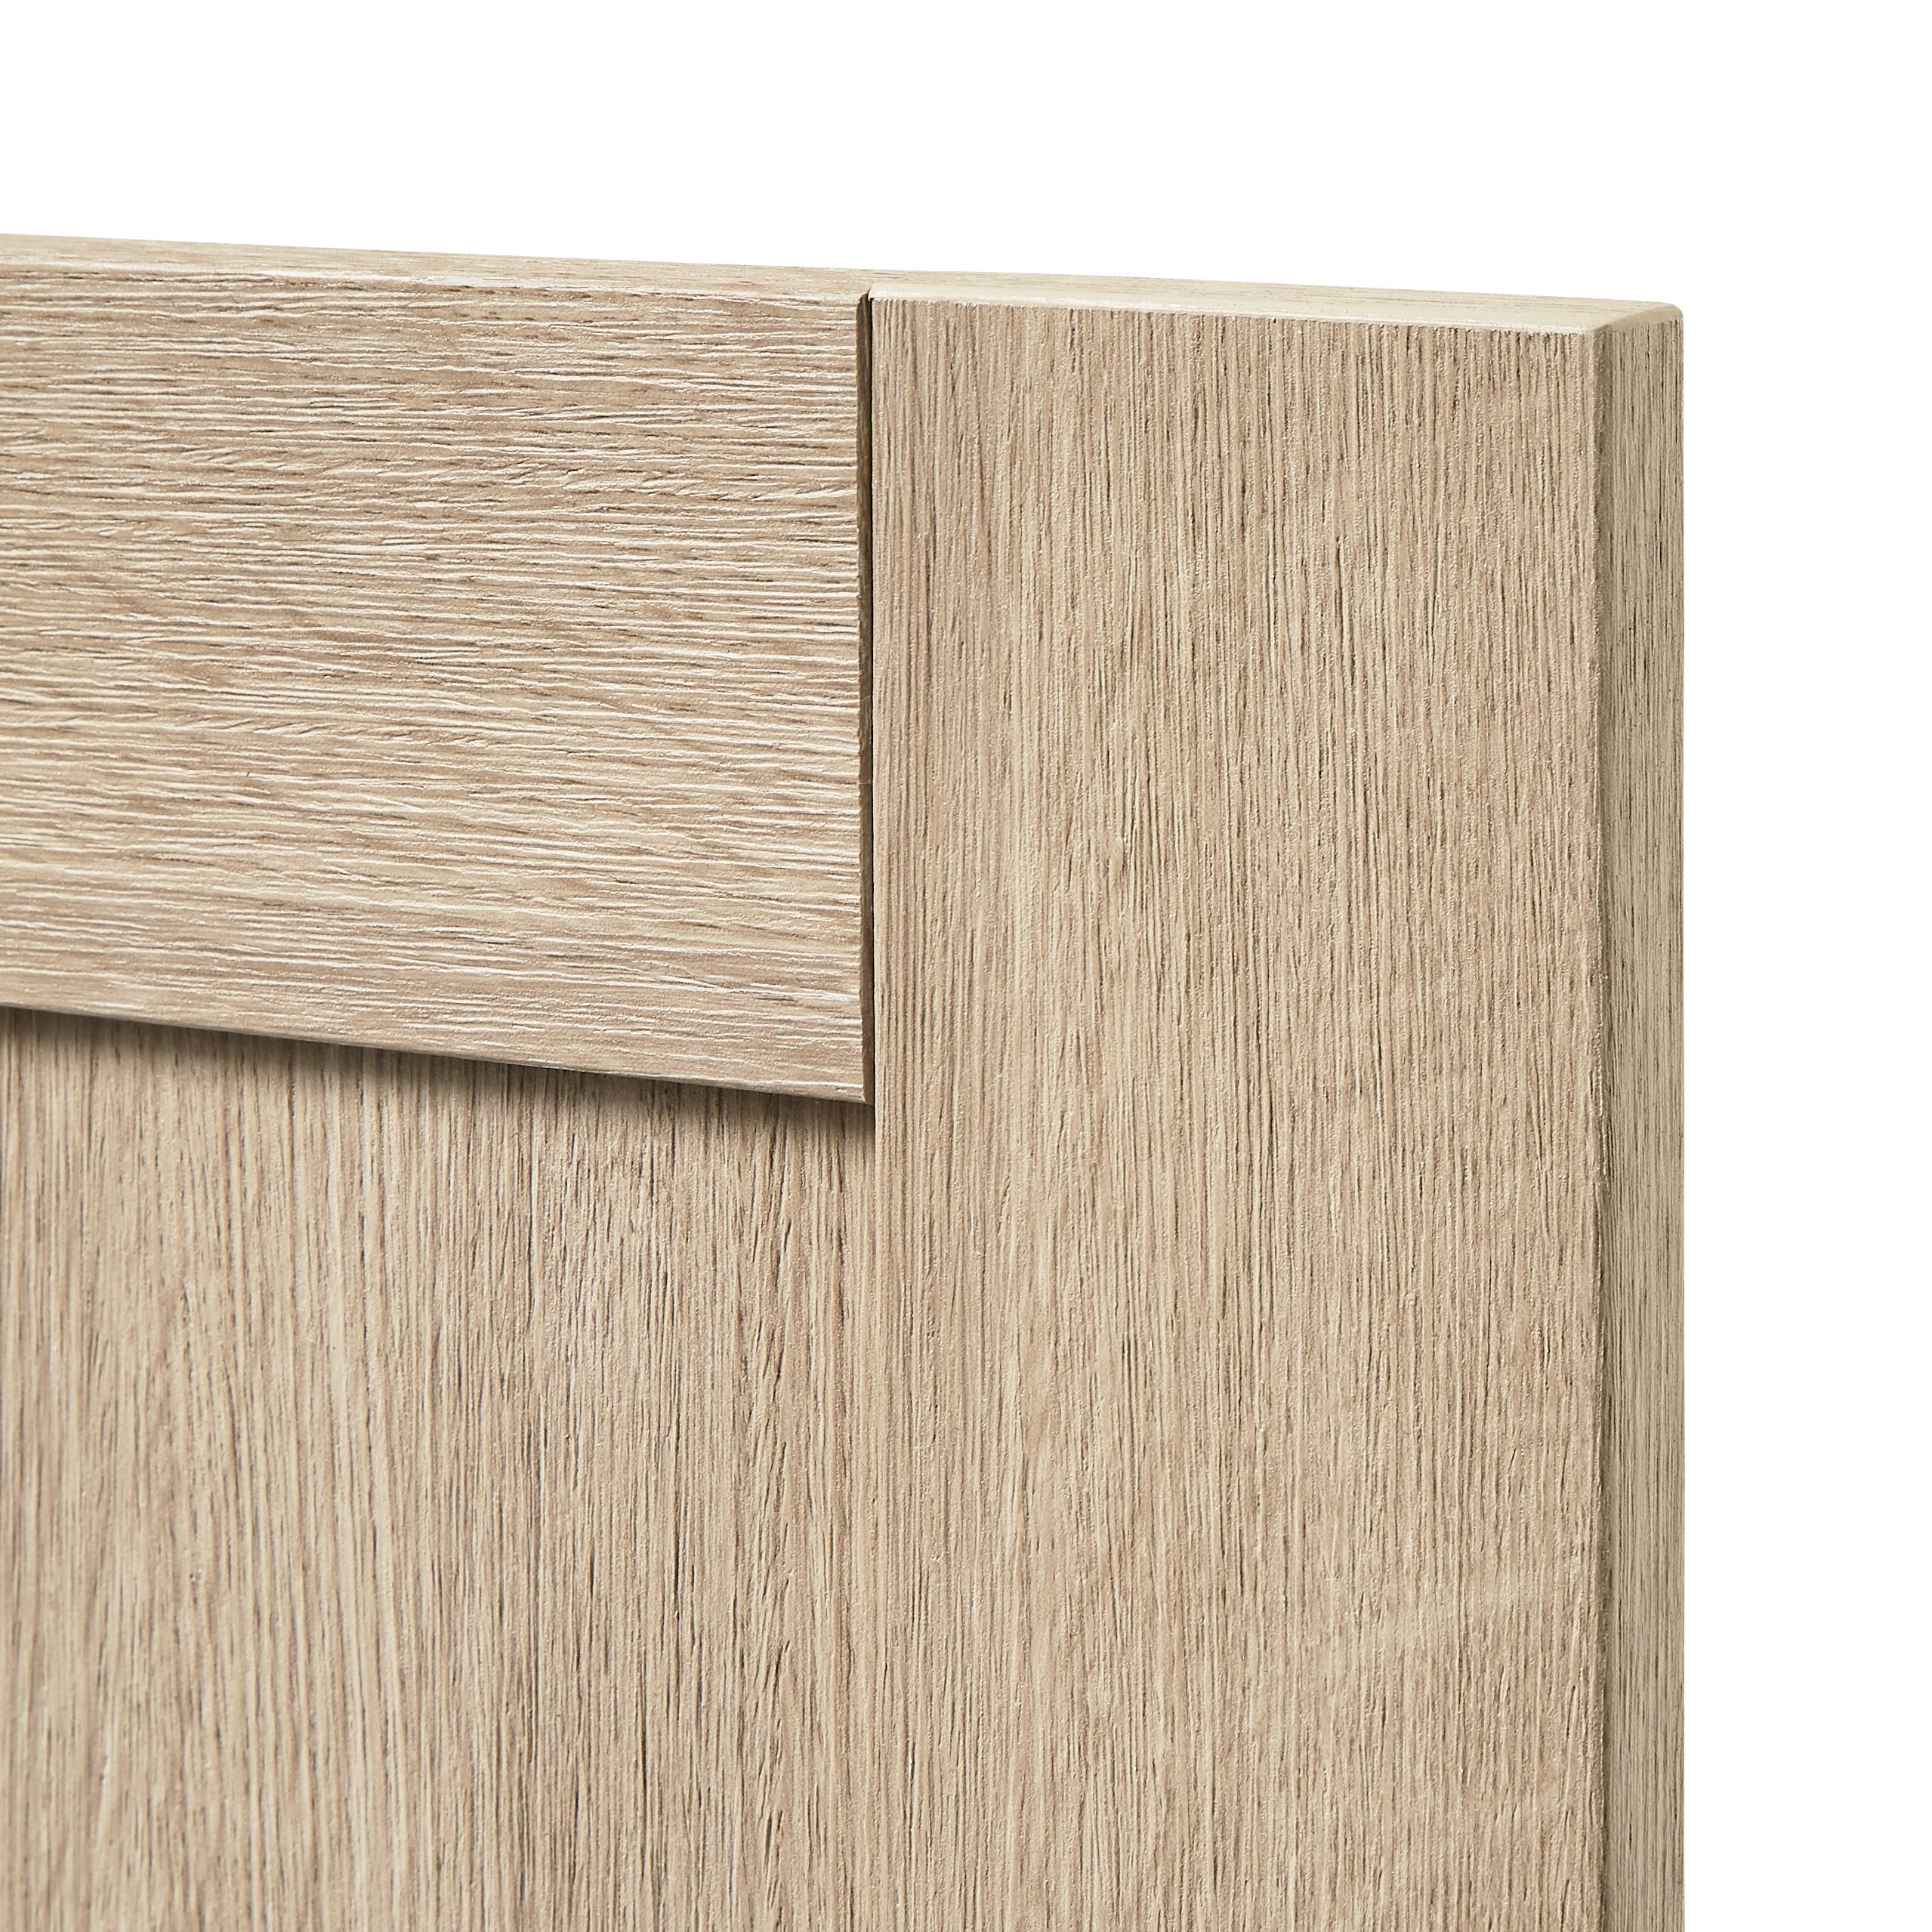 GoodHome Alpinia Oak effect shaker Appliance Cabinet door (W)600mm (H)543mm (T)18mm